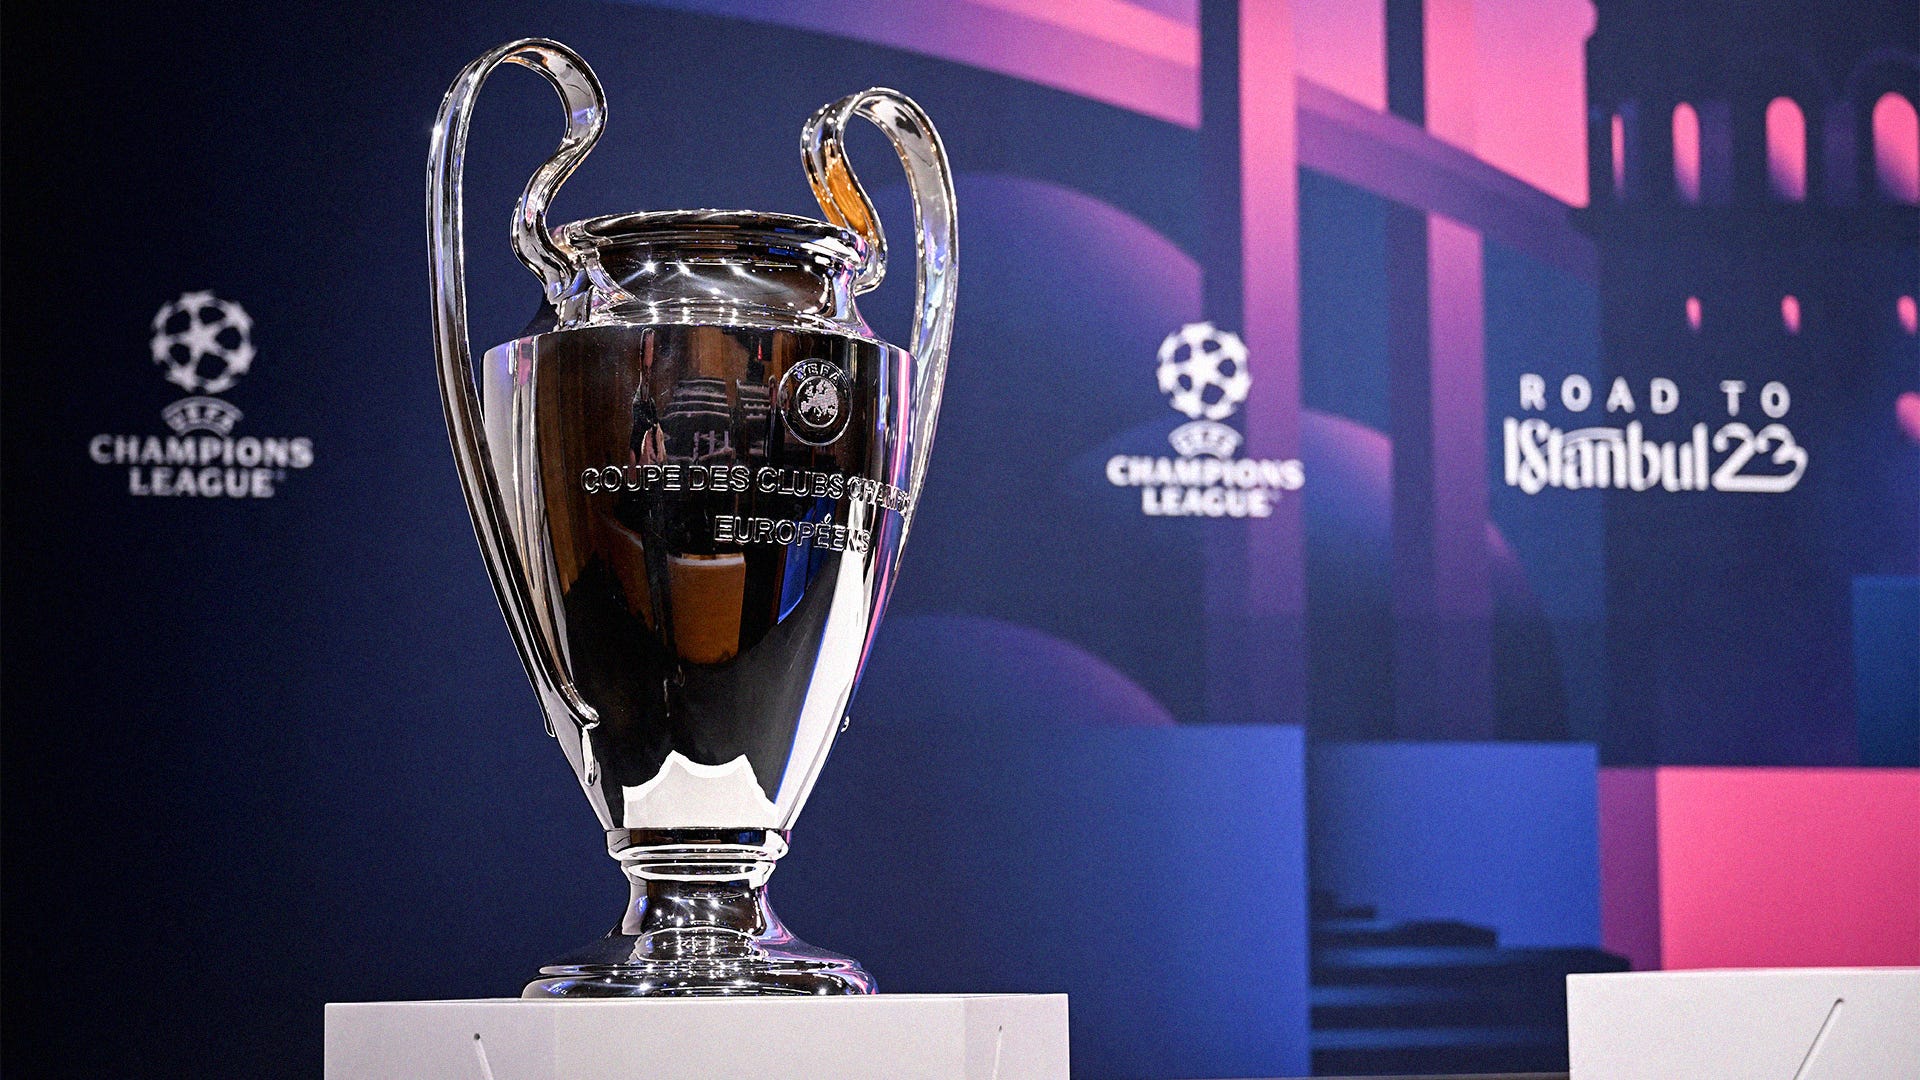 Os 4 classificados para as quartas de final da Champions League